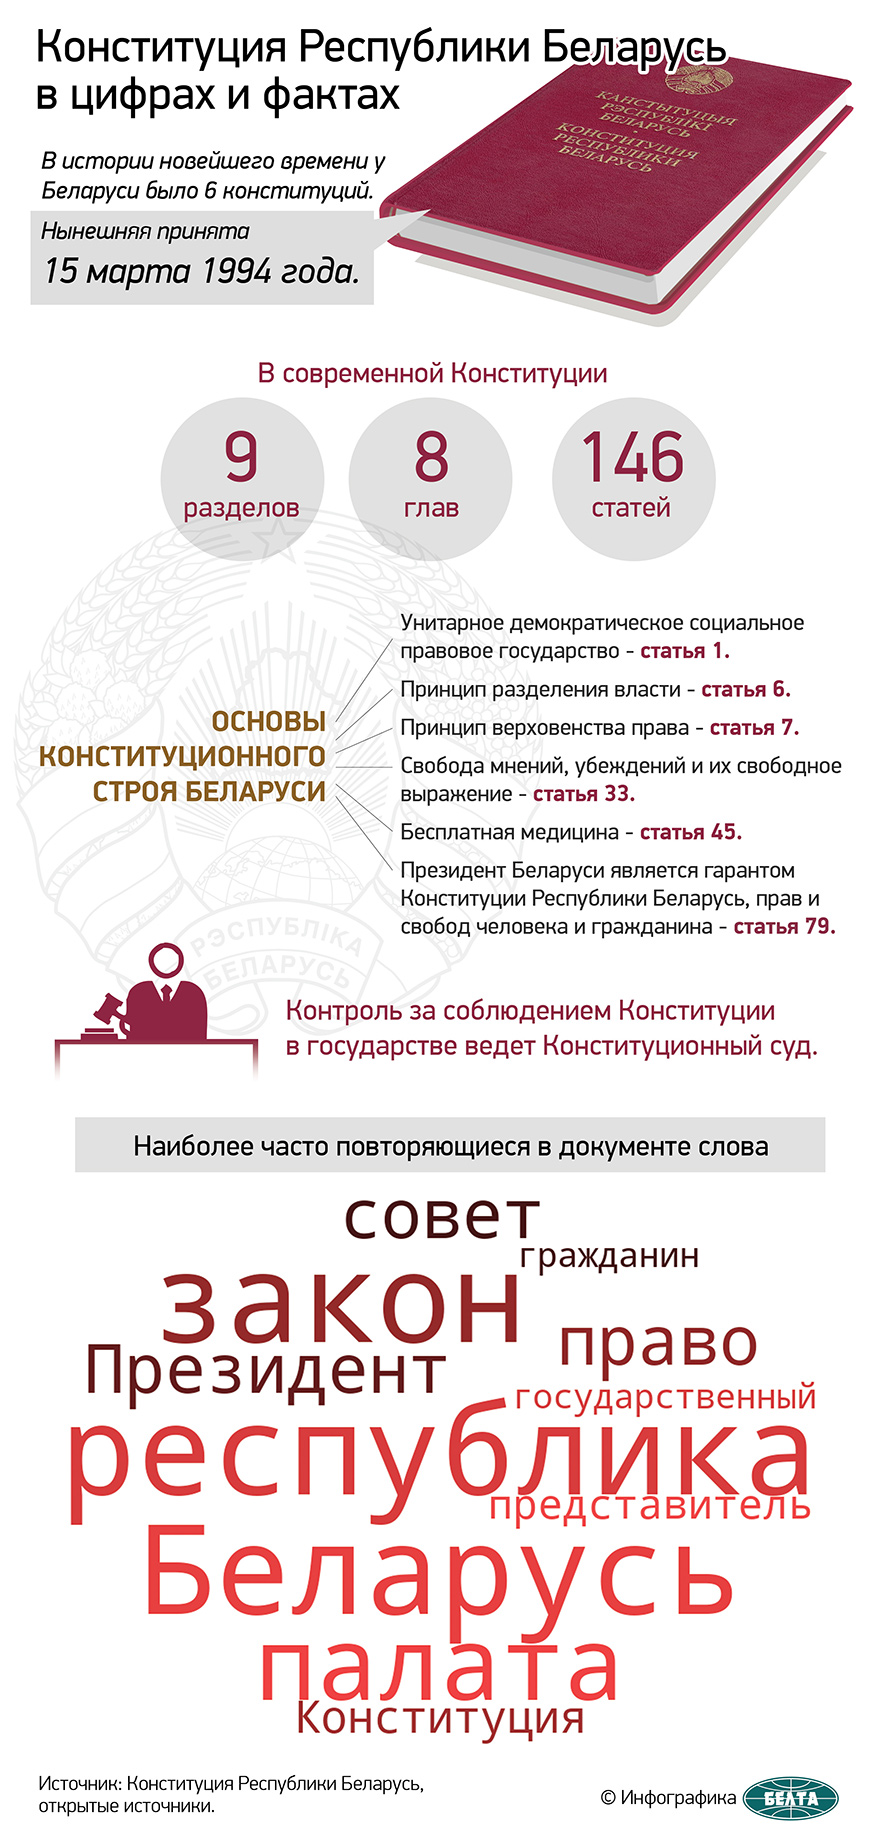 Конституция Республики Беларусь в цифрах и фактах